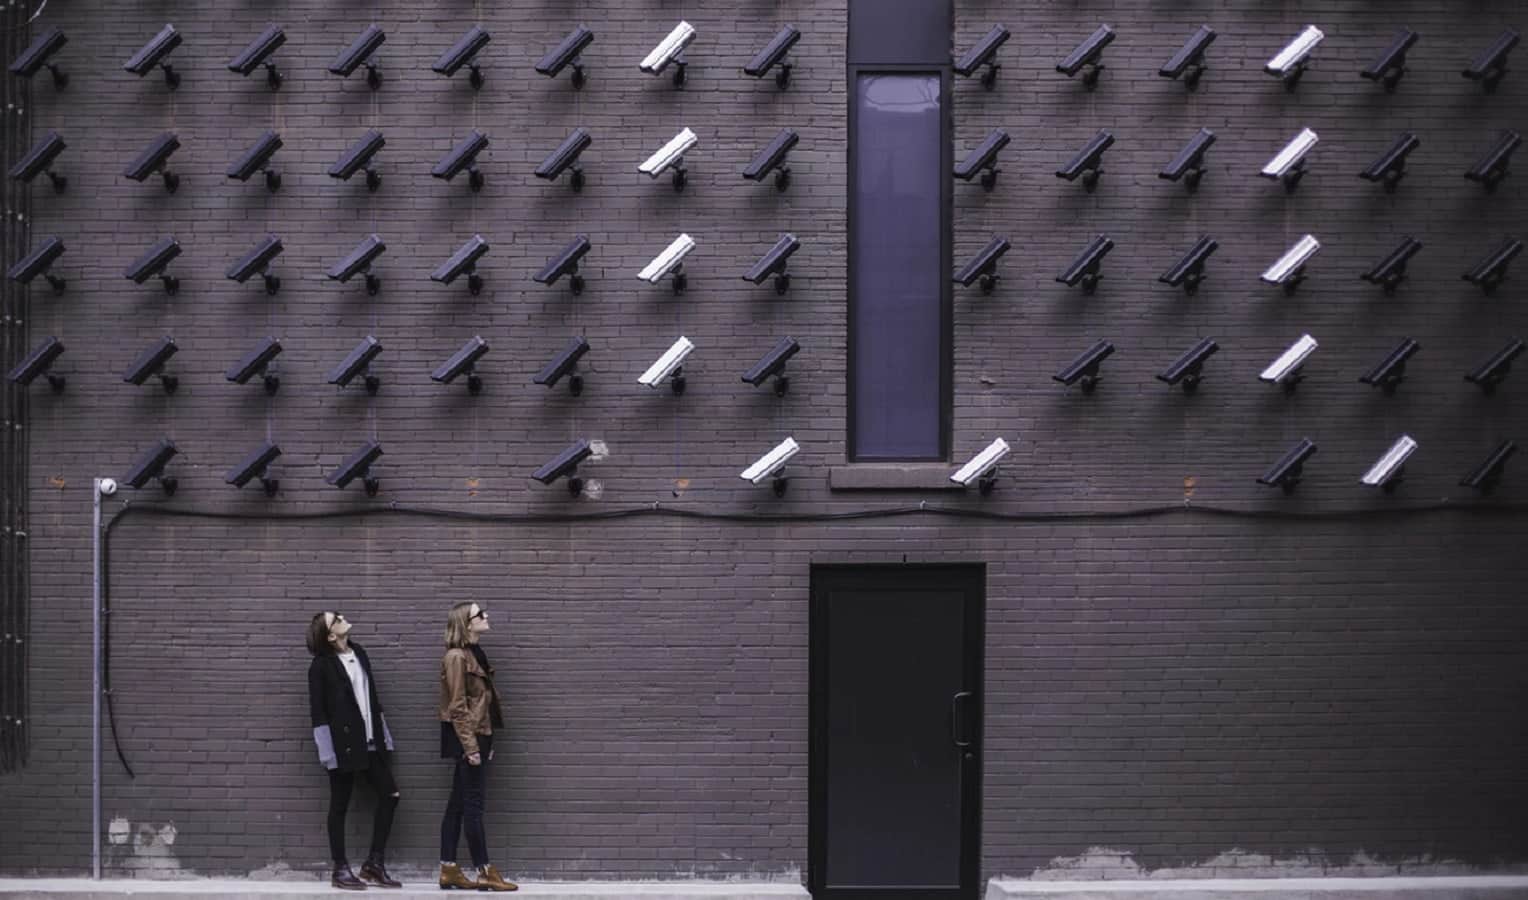 câmeras de reconhecimento facial monitoramento vigilância